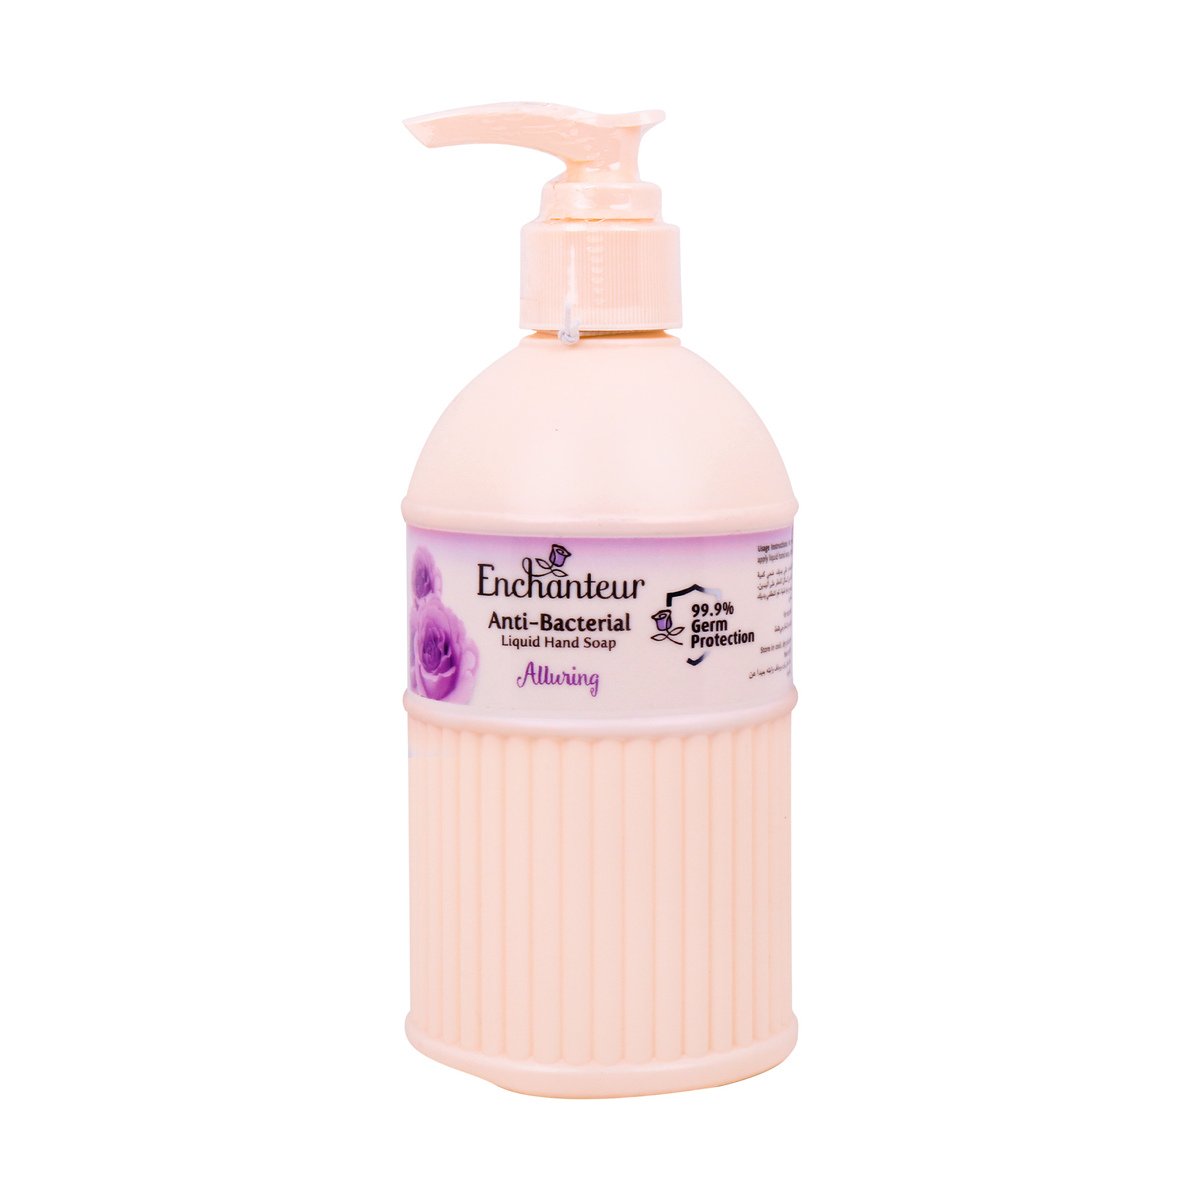 Enchanteur Perfumed Liquid Hand Soap Alluring 300 ml